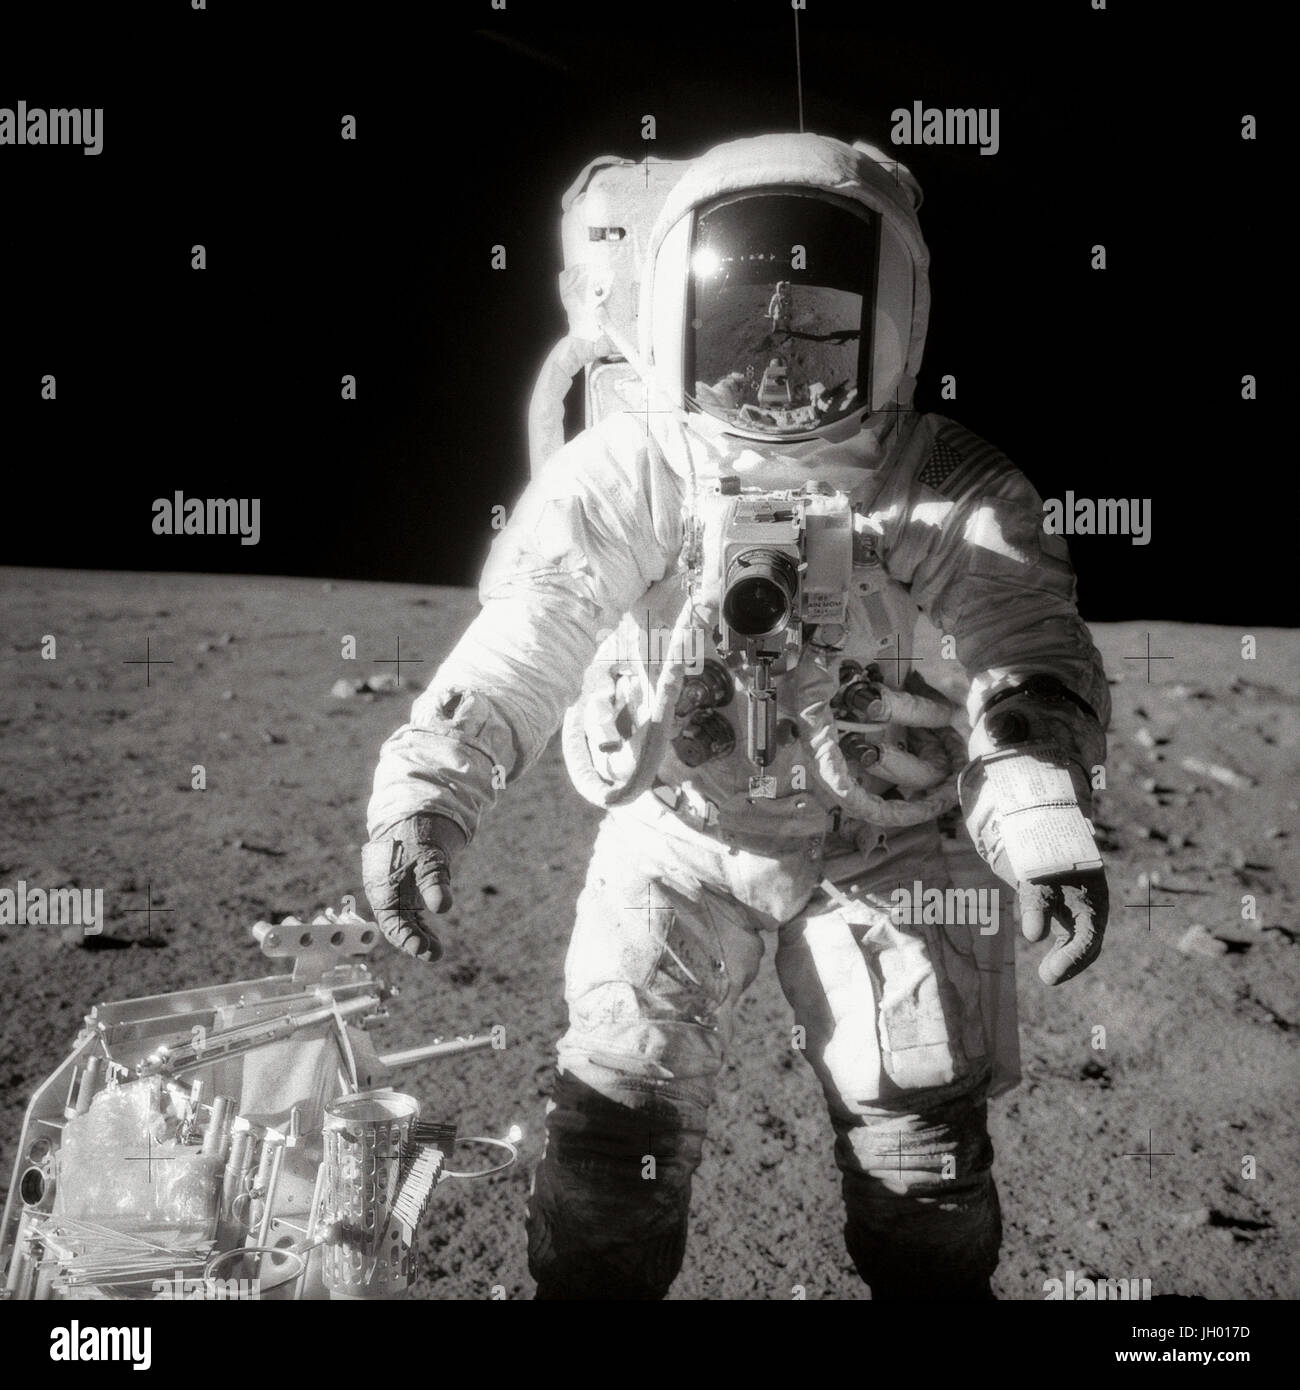 Astronauta Alan L. Fagiolo, Modulo Lunare pilota, pause nei pressi di un portautensile durante attività extravehicular (EVA) sulla superficie della luna. Il comandante Charles Conrad Jr., chi ha preso la foto in bianco e nero, si riflette nei bean di visiera del casco. Fotografo: NASA /Charles Conrad, Jr. Foto Stock